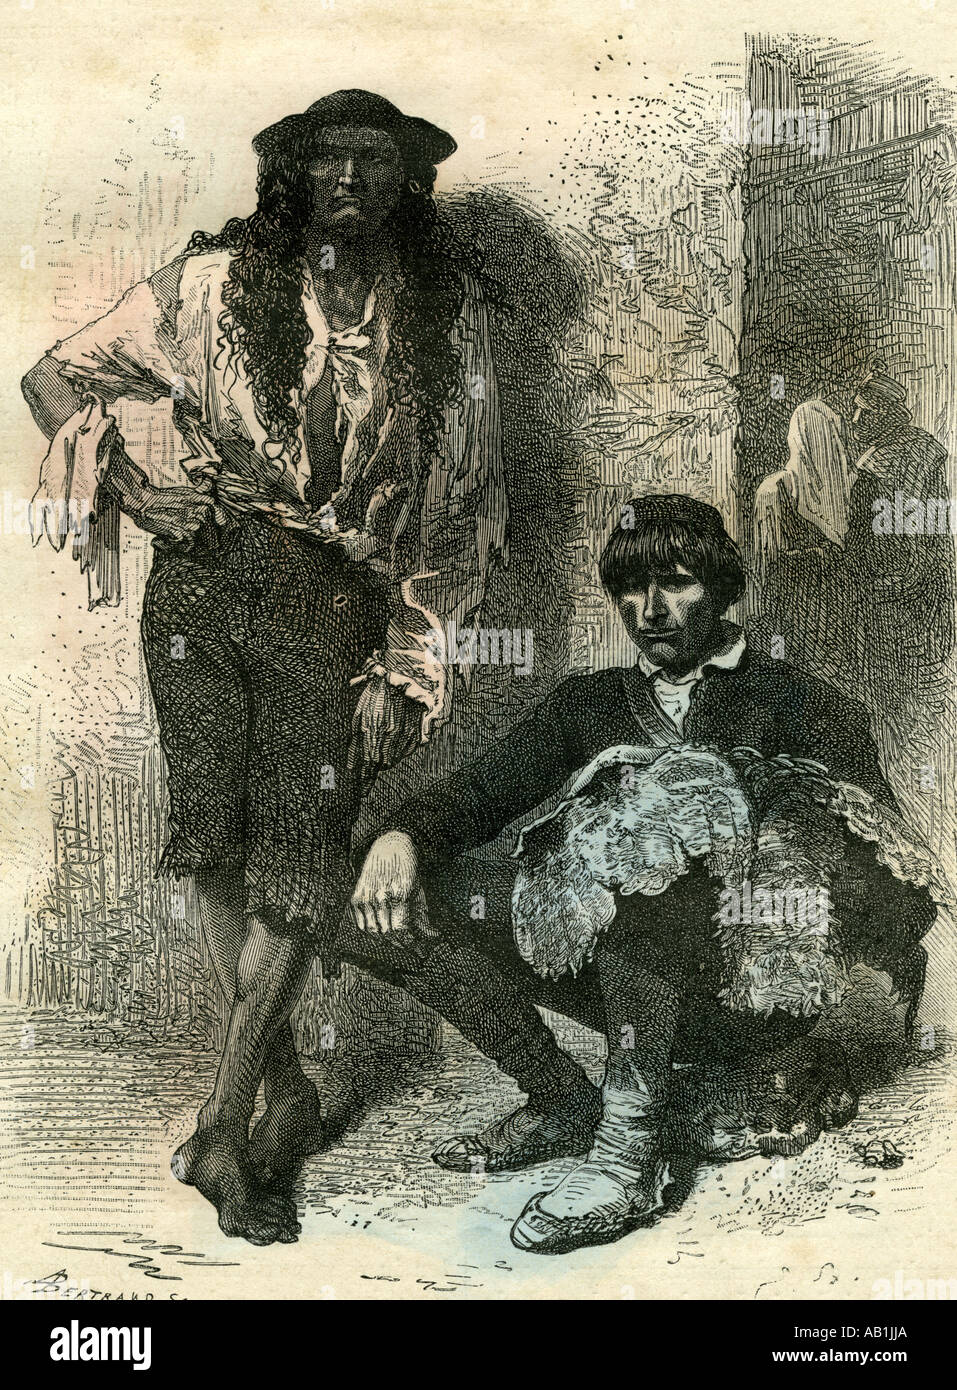 Slovenia Gypsy and Farmer 19th century Stock Photo